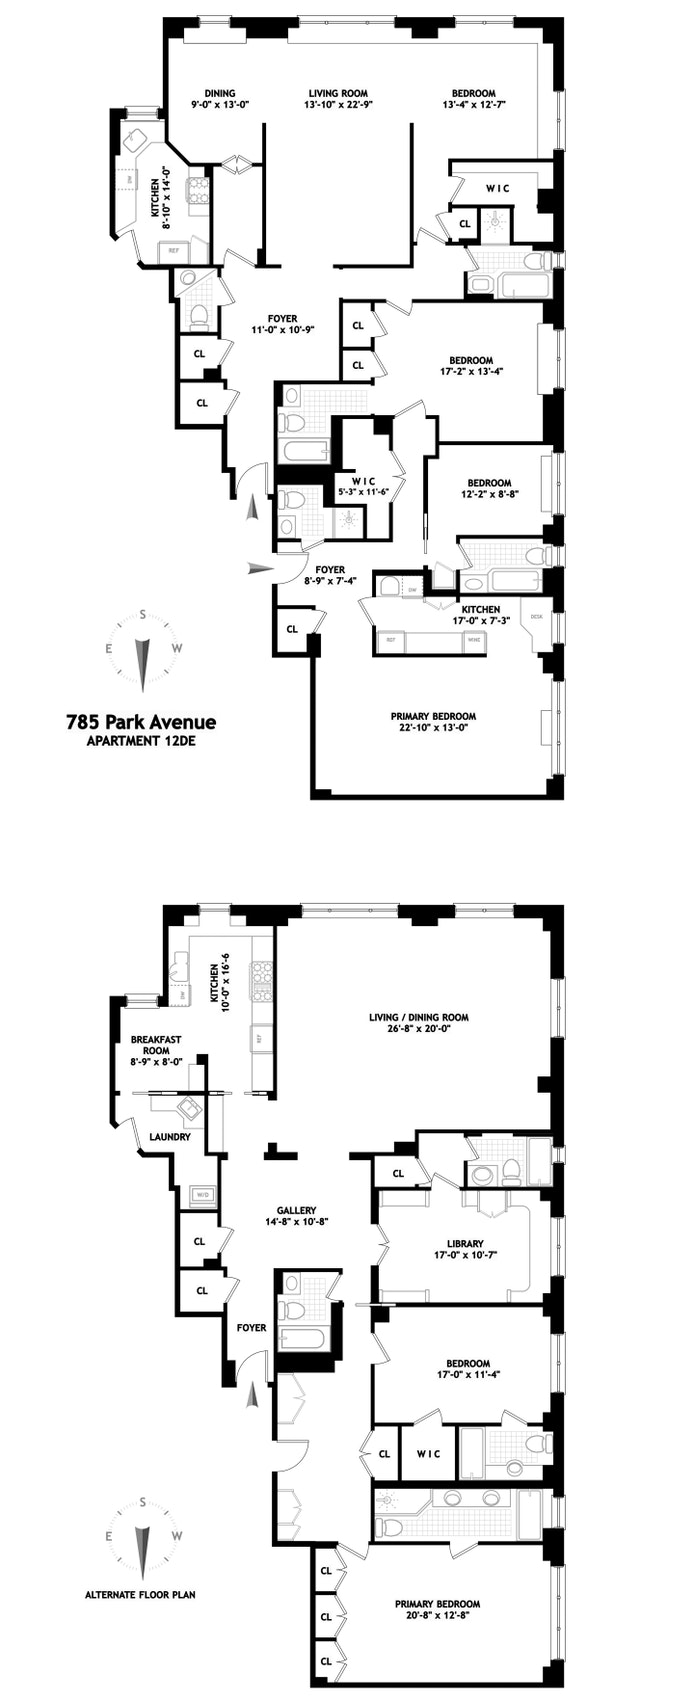 Floorplan for 785 Park Avenue, 12DE